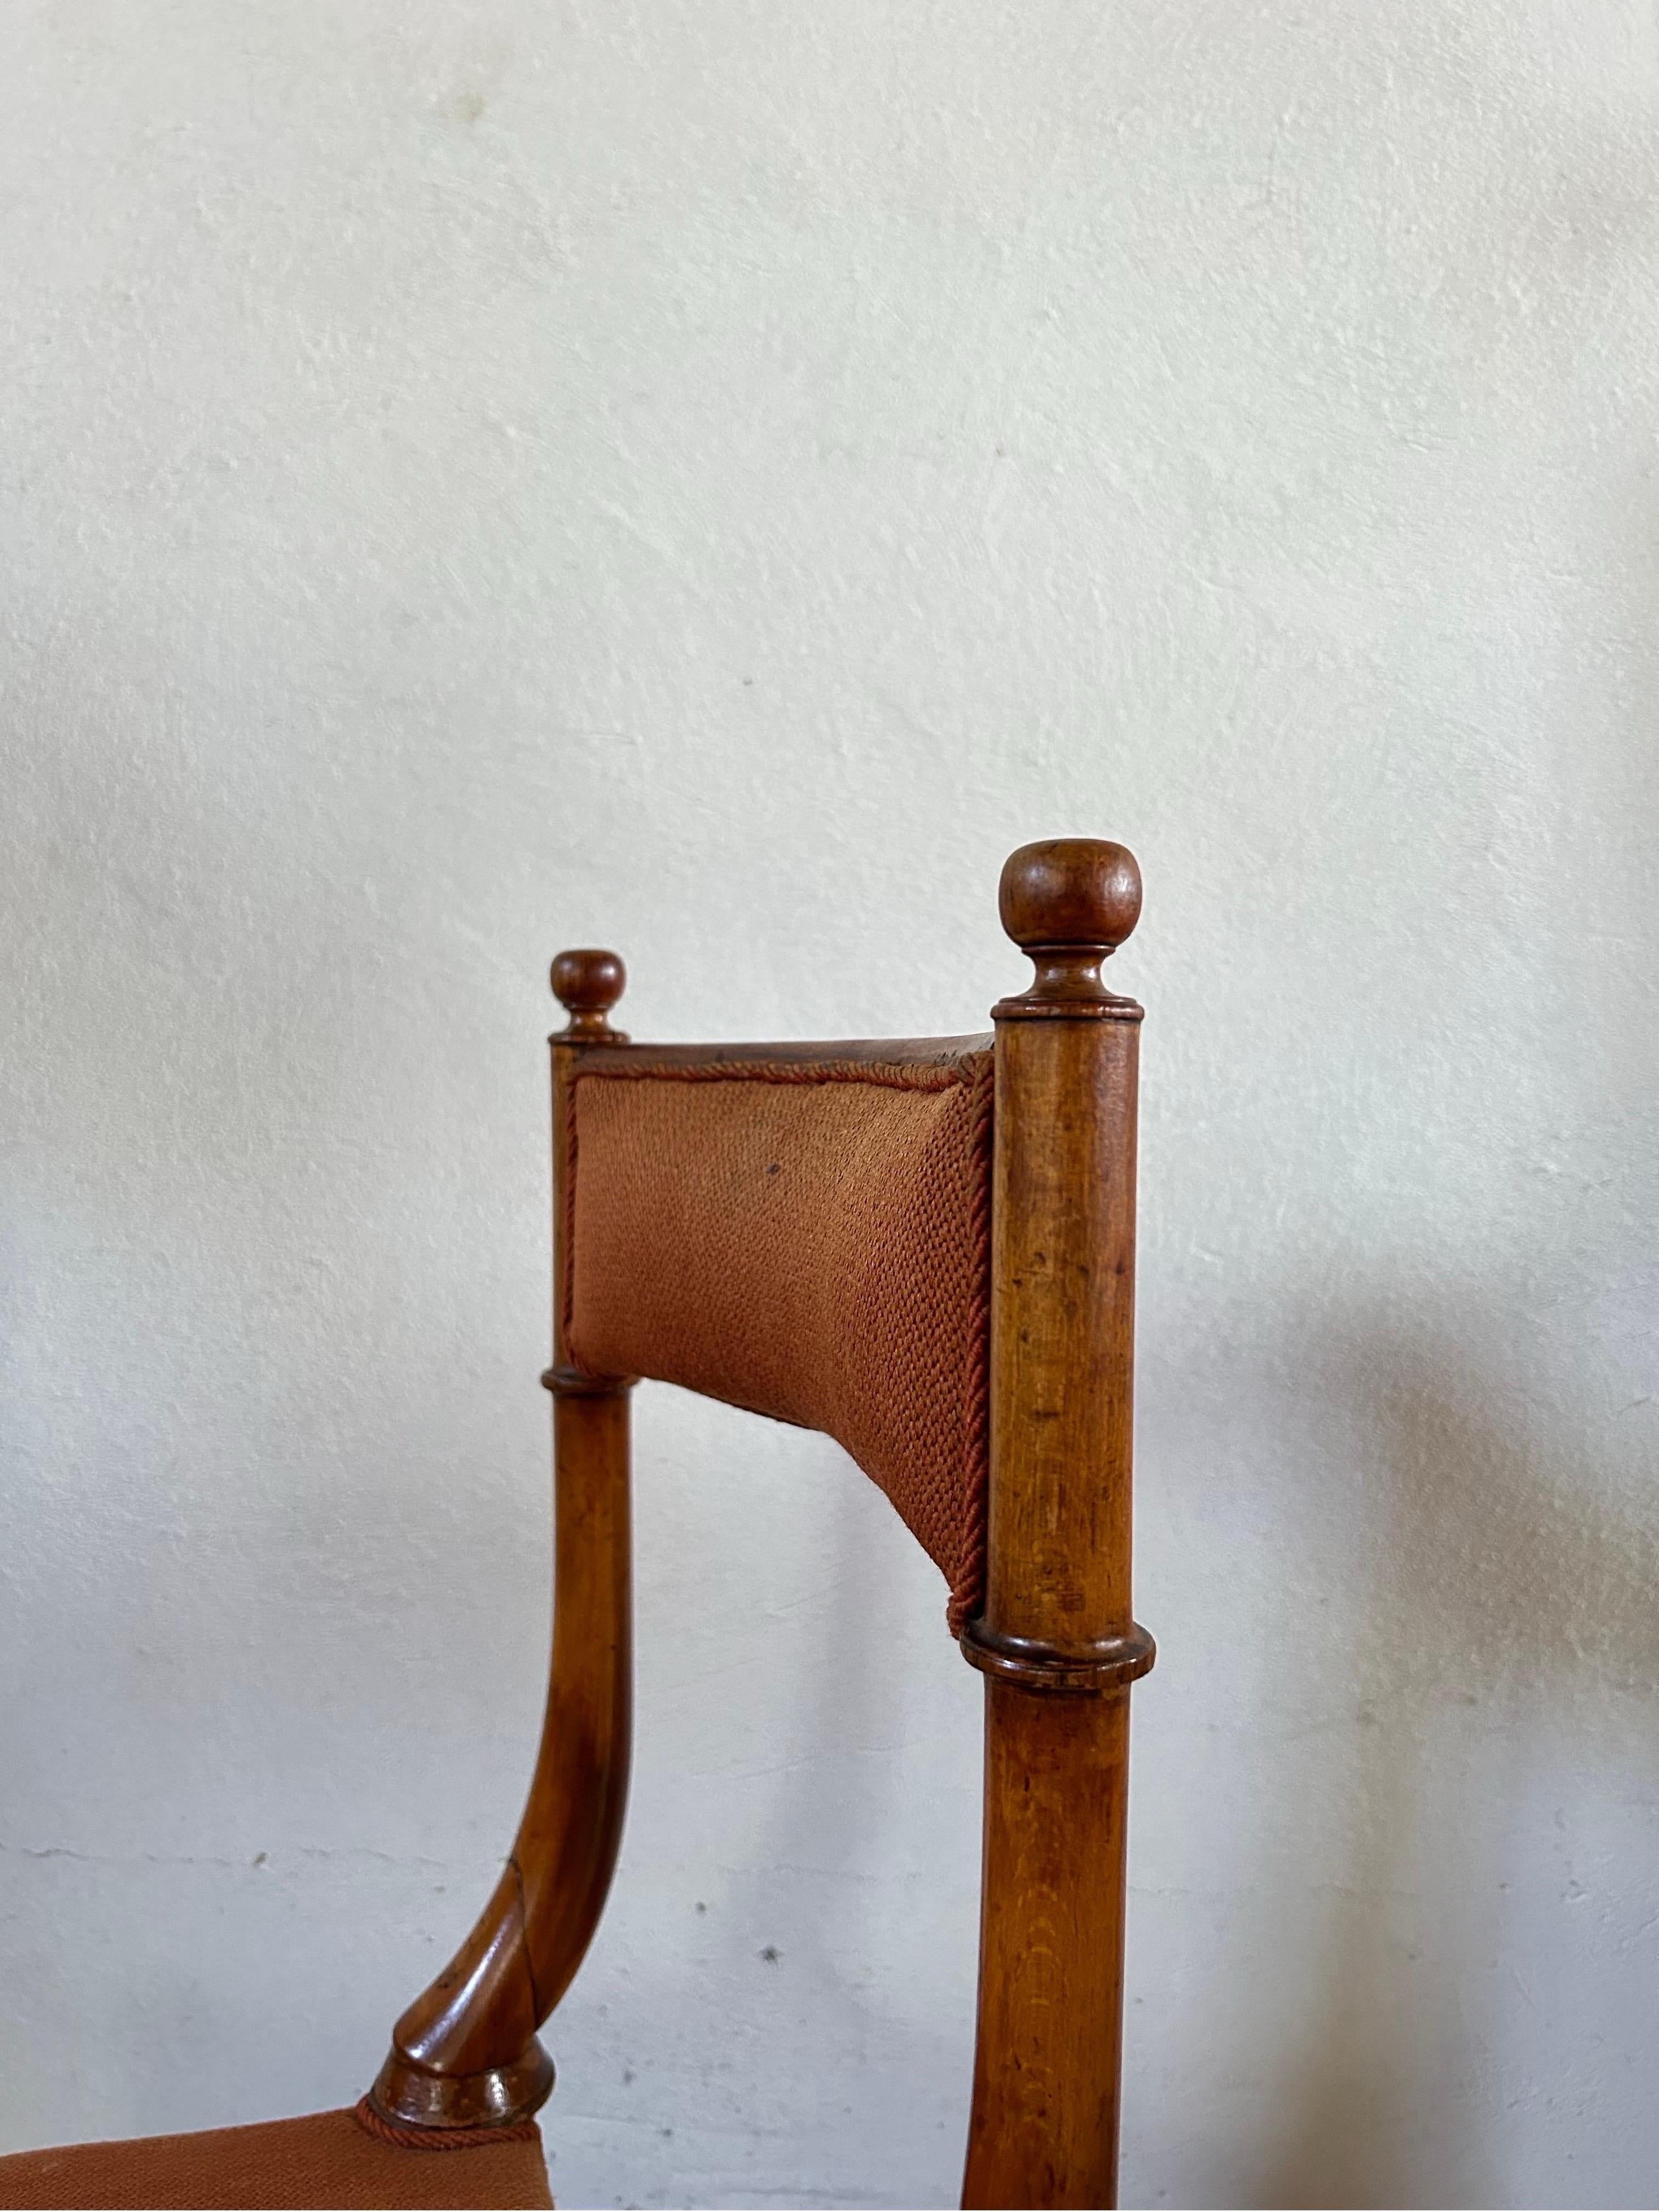 Chaise d'appoint rare et peu commune, fabriquée au Danemark dans les années 1840 par l'artiste renommé Jørgen Roed. Avec son artisanat exquis et sa signification historique, cette chaise témoigne de l'héritage durable de l'excellence du design